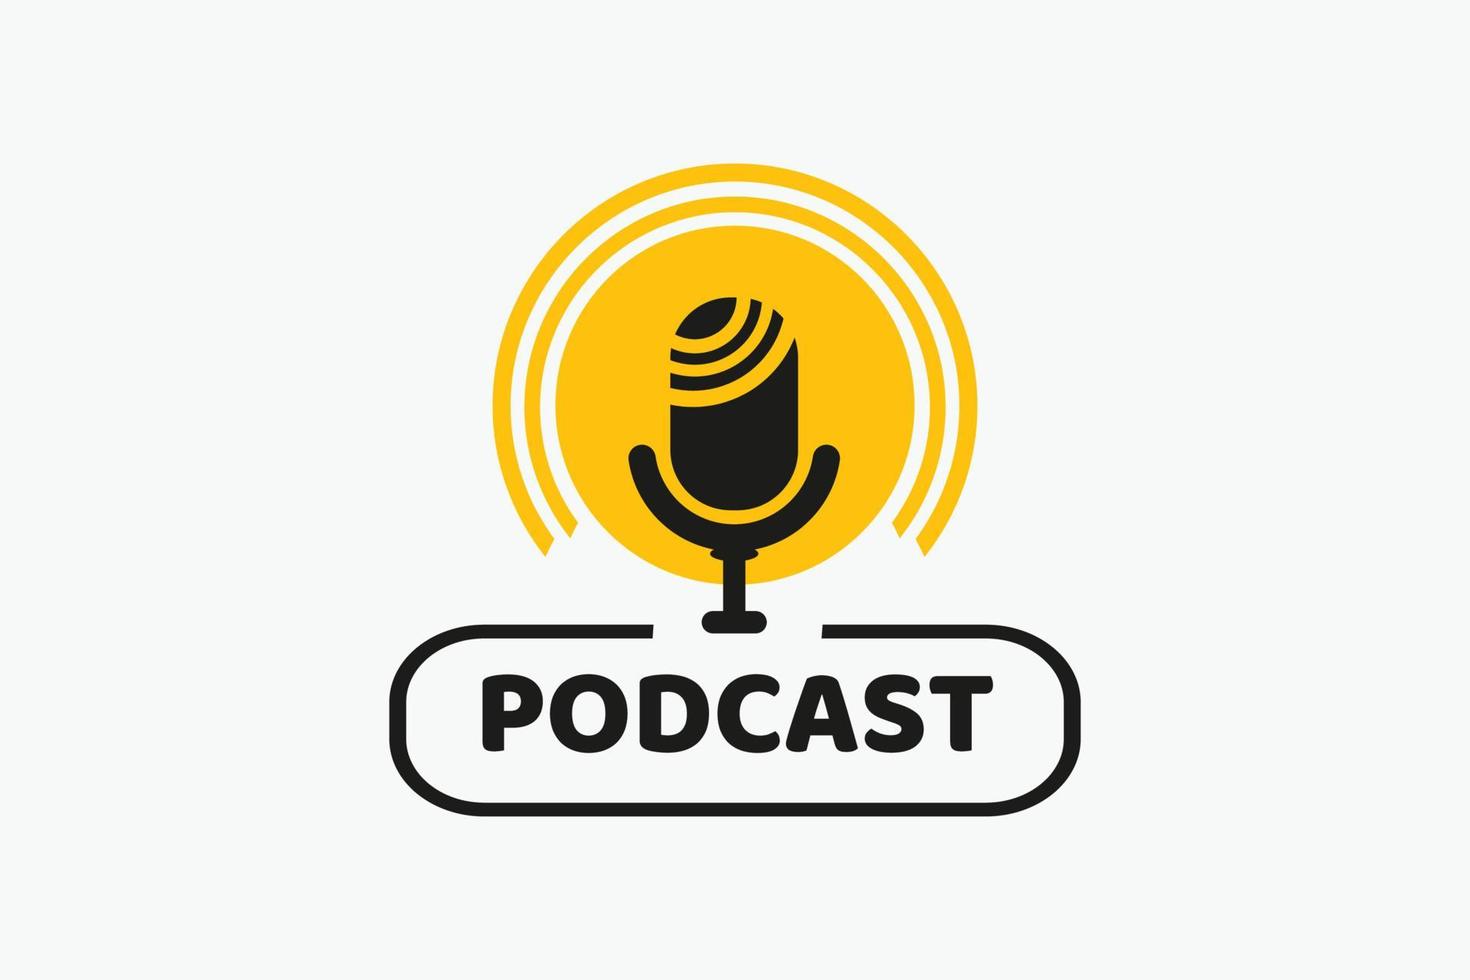 conception de badge géométrique podcast avec illustration vectorielle de microphone vecteur